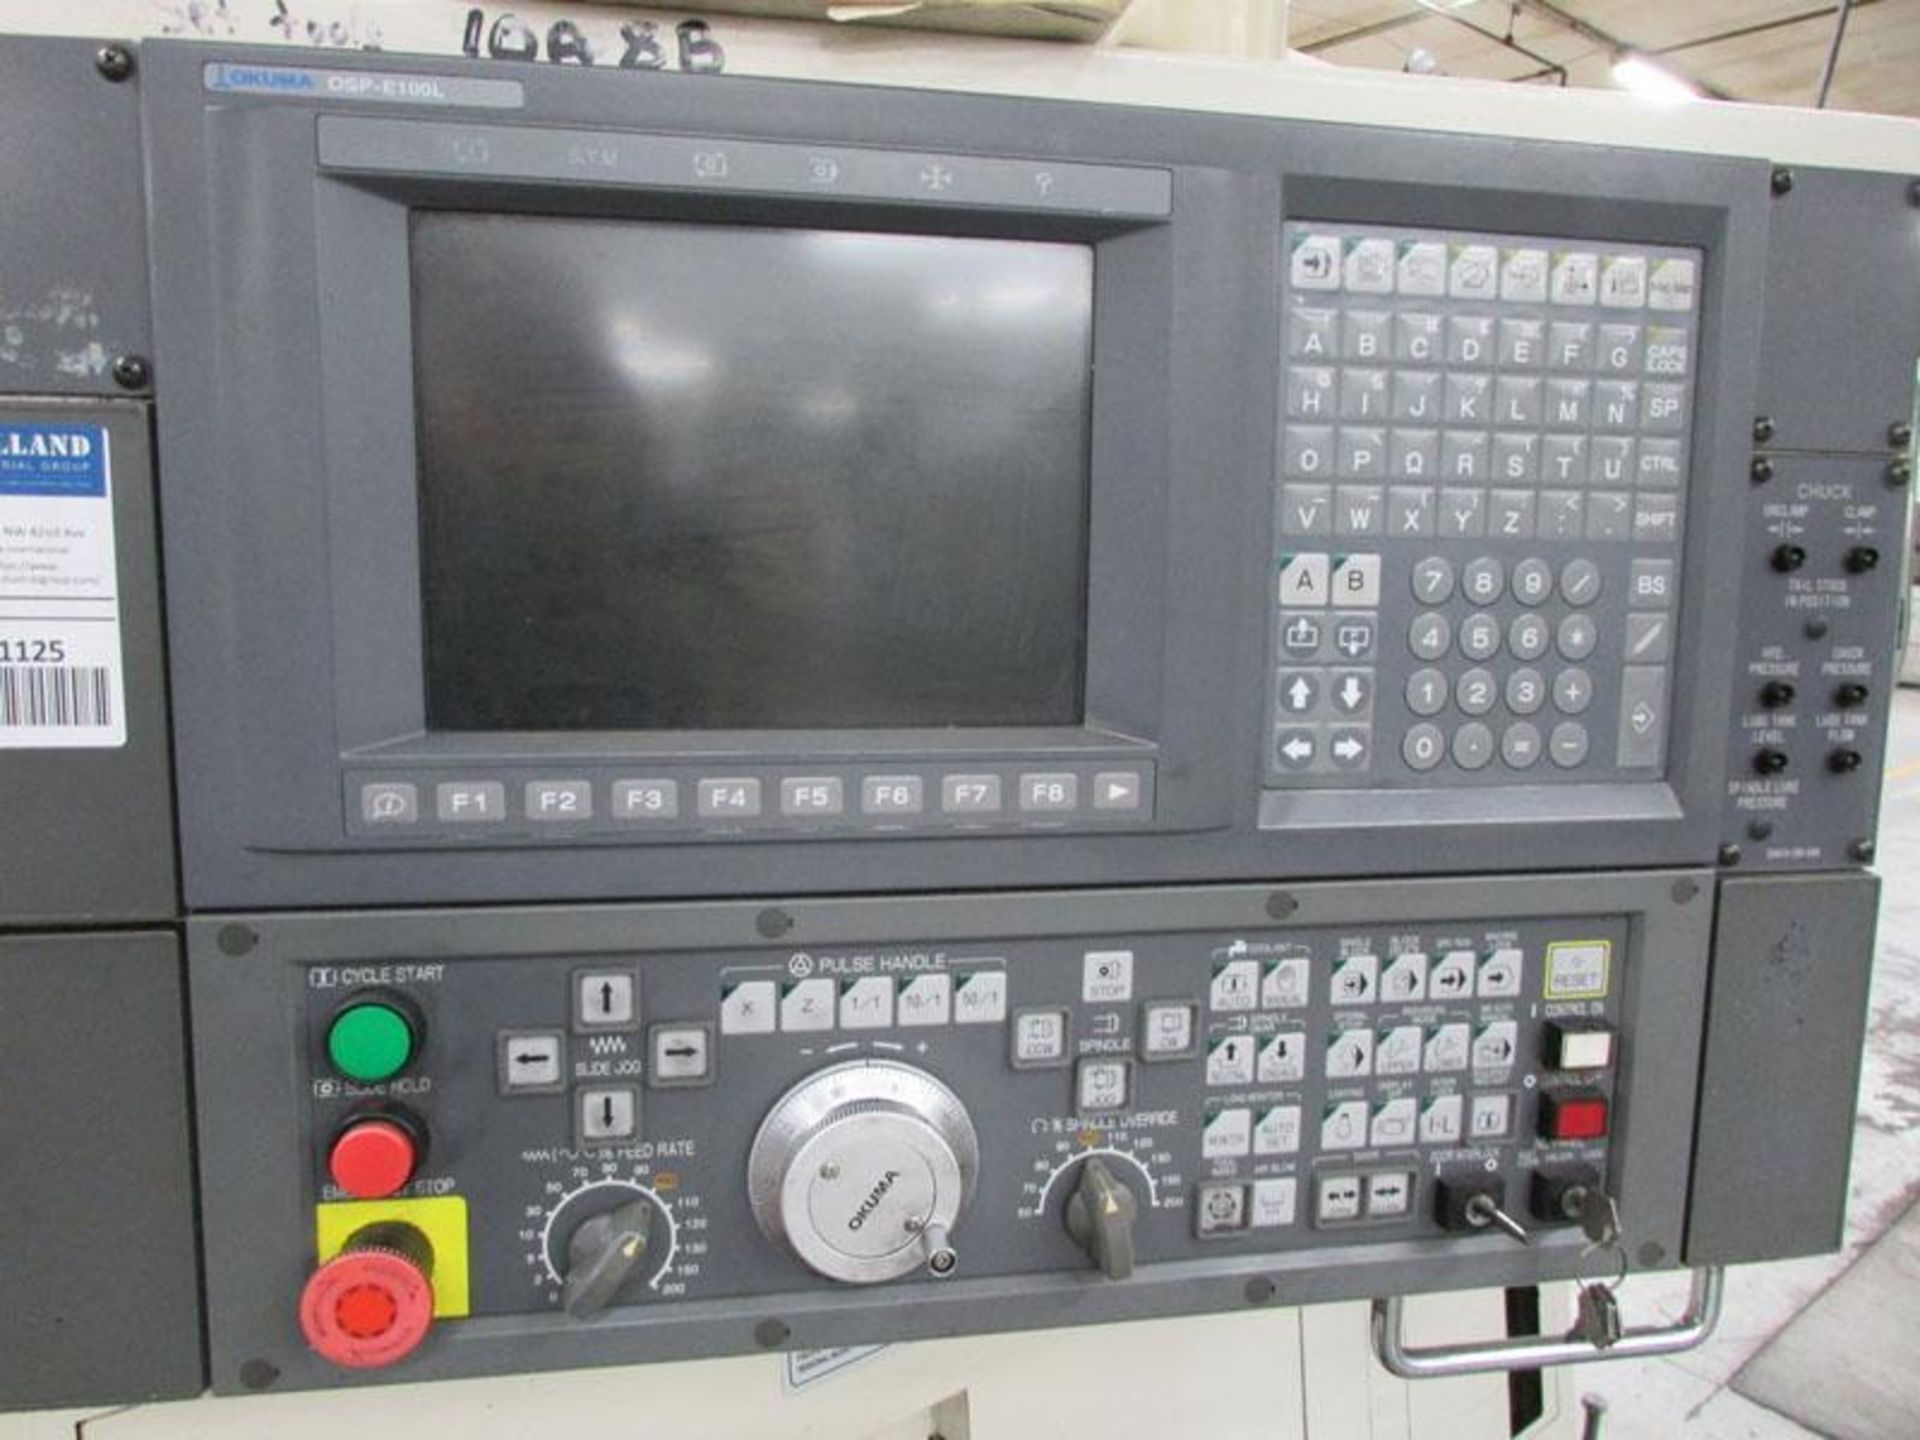 2003 Okuma Simul Turn LU300 2SC600 Twin Turret CNC Horizontal Turning Center - Image 8 of 13